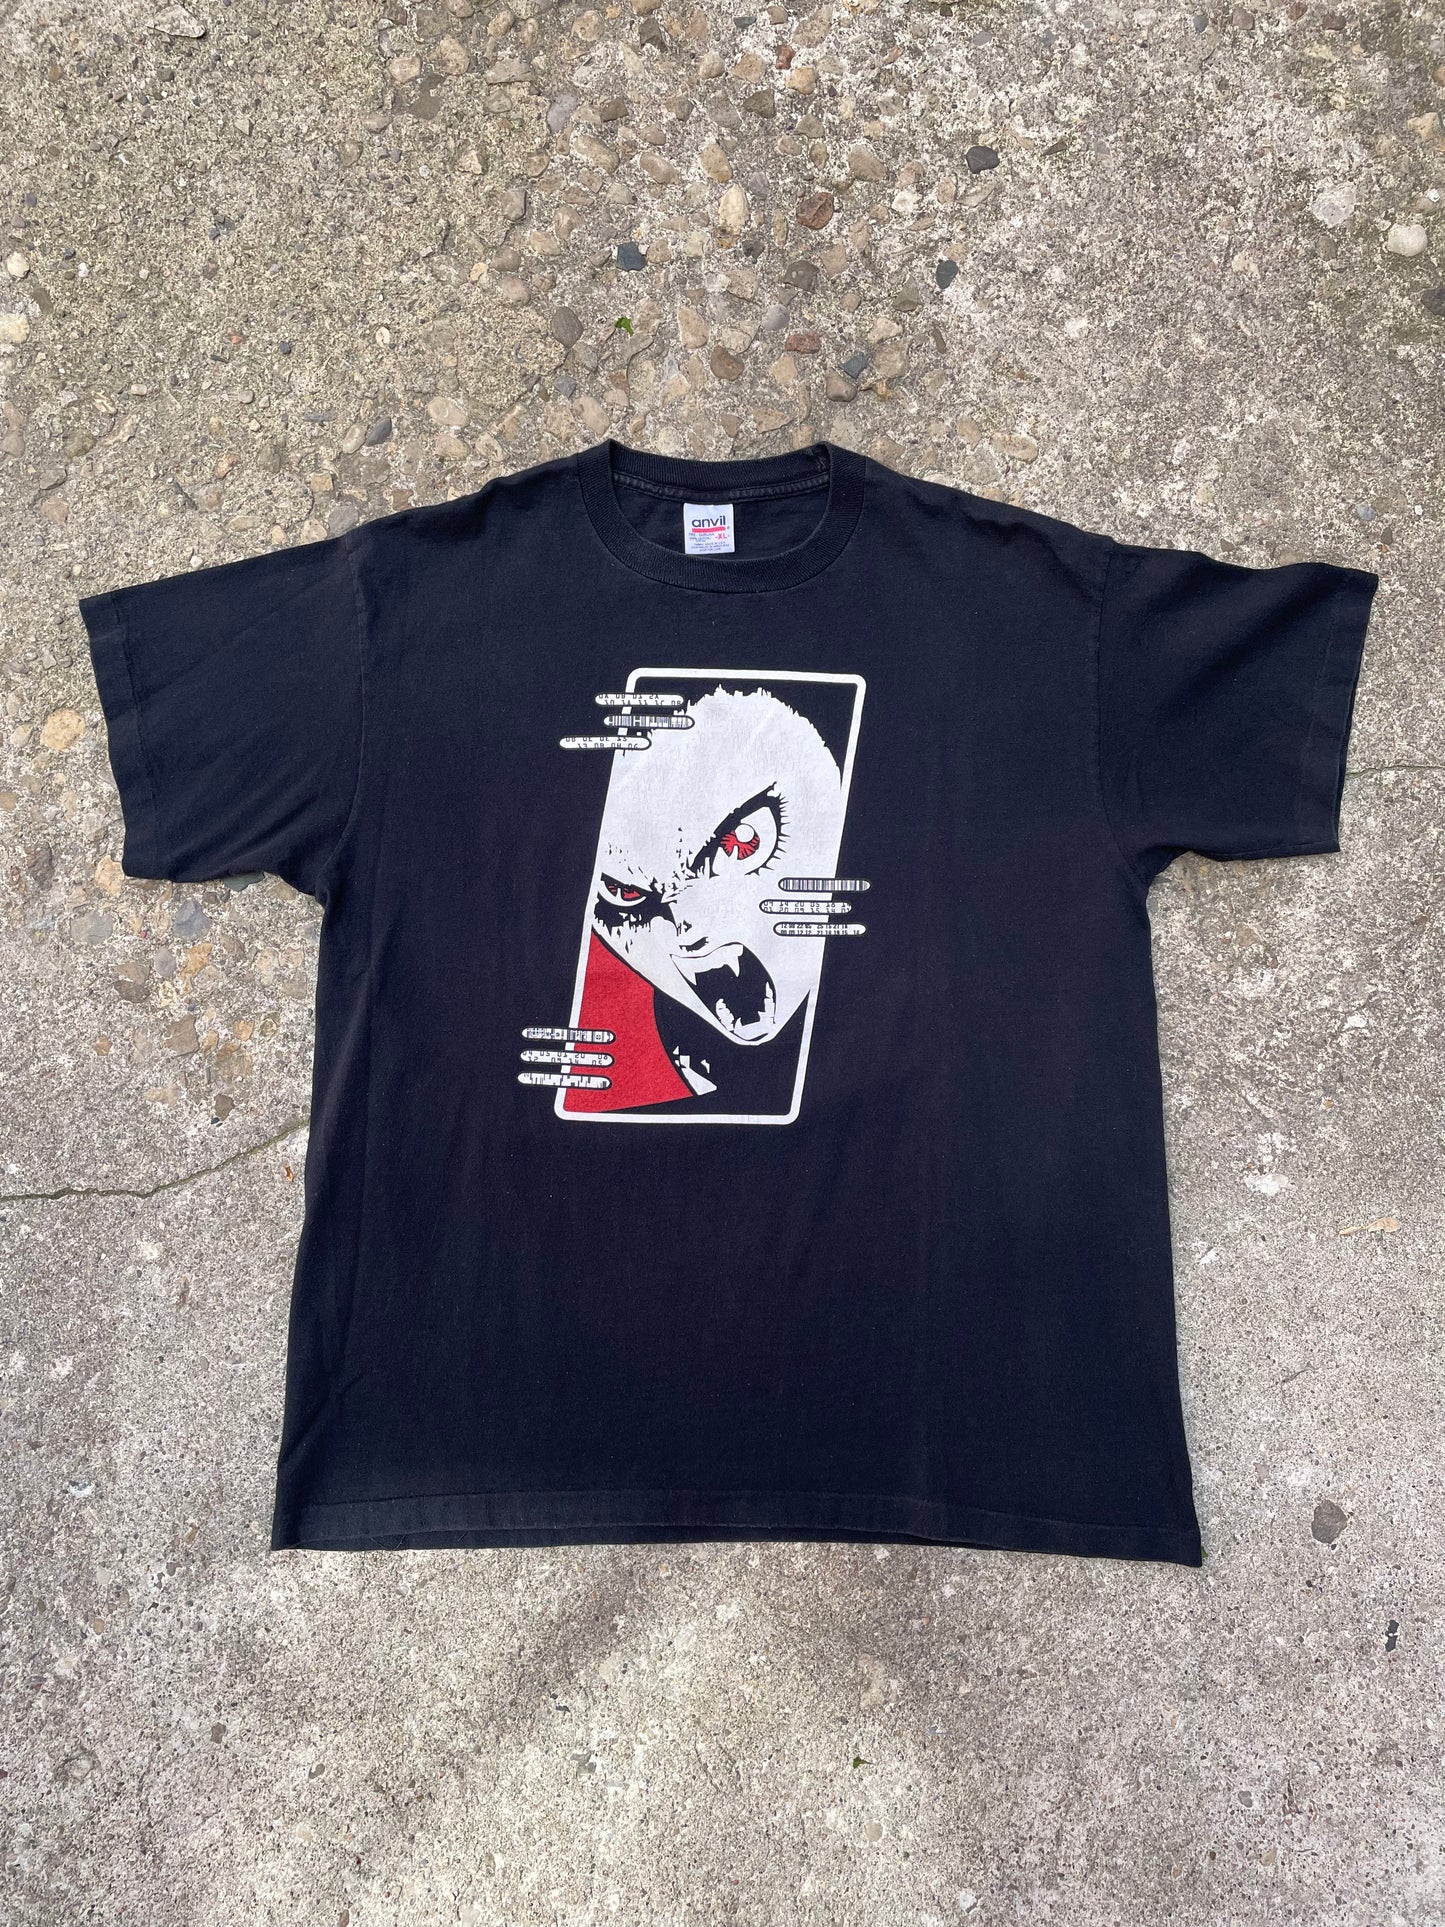 1997 'Arashi Syndrom' Deathline International Industrial Band T-Shirt - XL